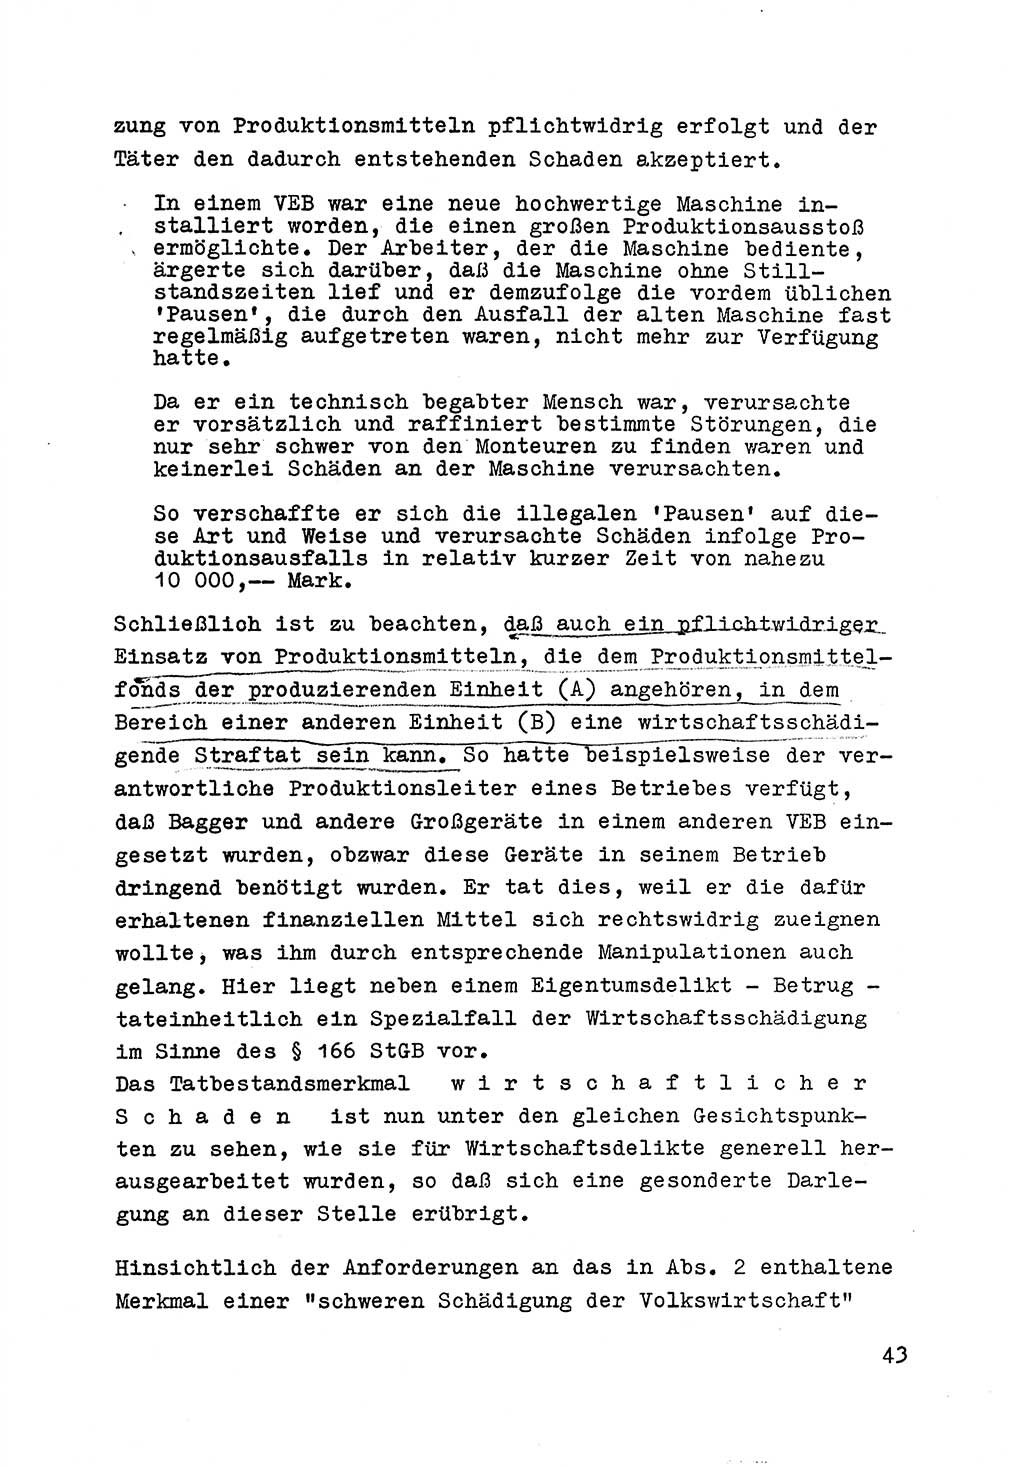 Strafrecht der DDR (Deutsche Demokratische Republik), Besonderer Teil, Lehrmaterial, Heft 6 1970, Seite 43 (Strafr. DDR BT Lehrmat. H. 6 1970, S. 43)